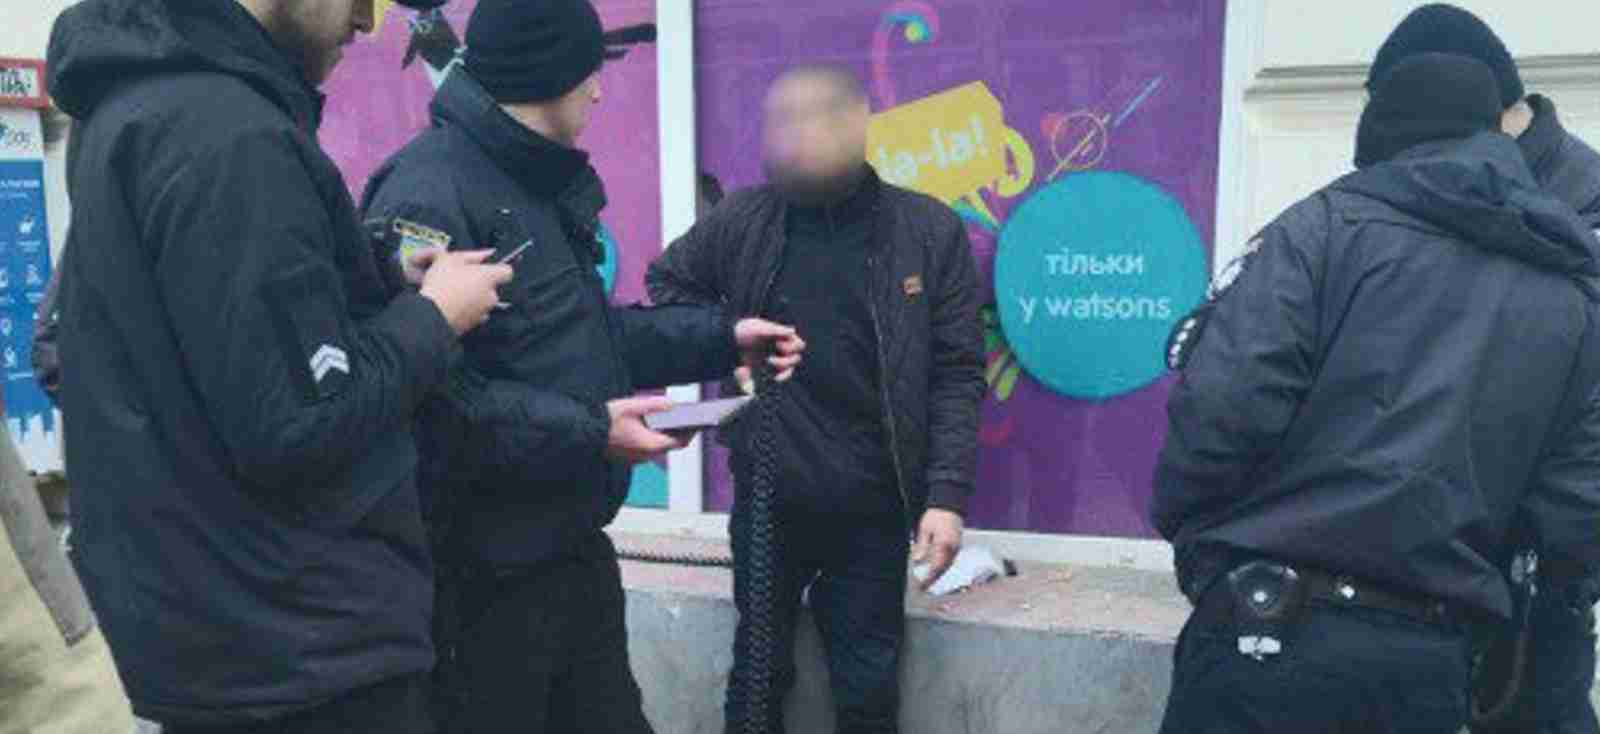 Львівські контролери допомогли затримати чоловіка «під кайфом» з іграшковим пістолетом (ФОТО)